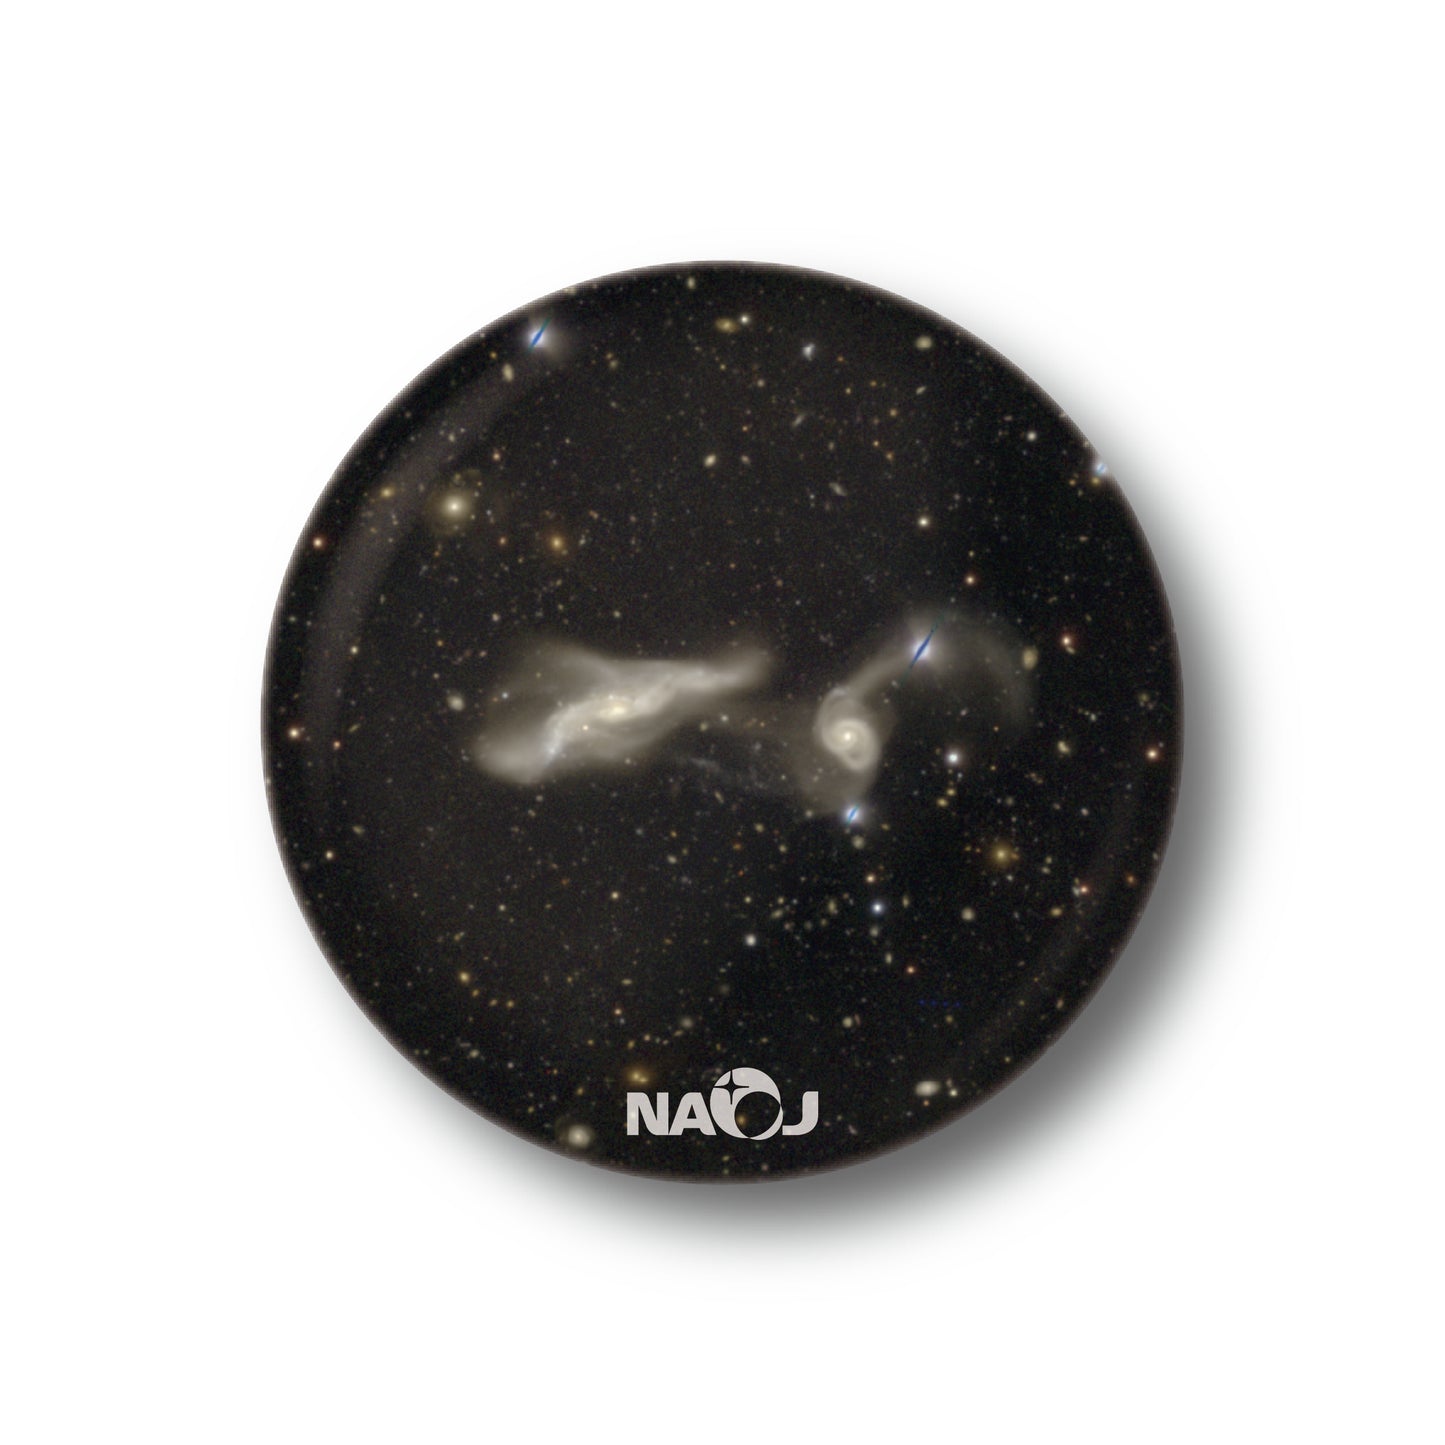 国立天文台  すばる望遠鏡HSCで見る宇宙  缶バッジ [小] 衝突銀河 UGC12589&2MASXJ23250382+0001068 01